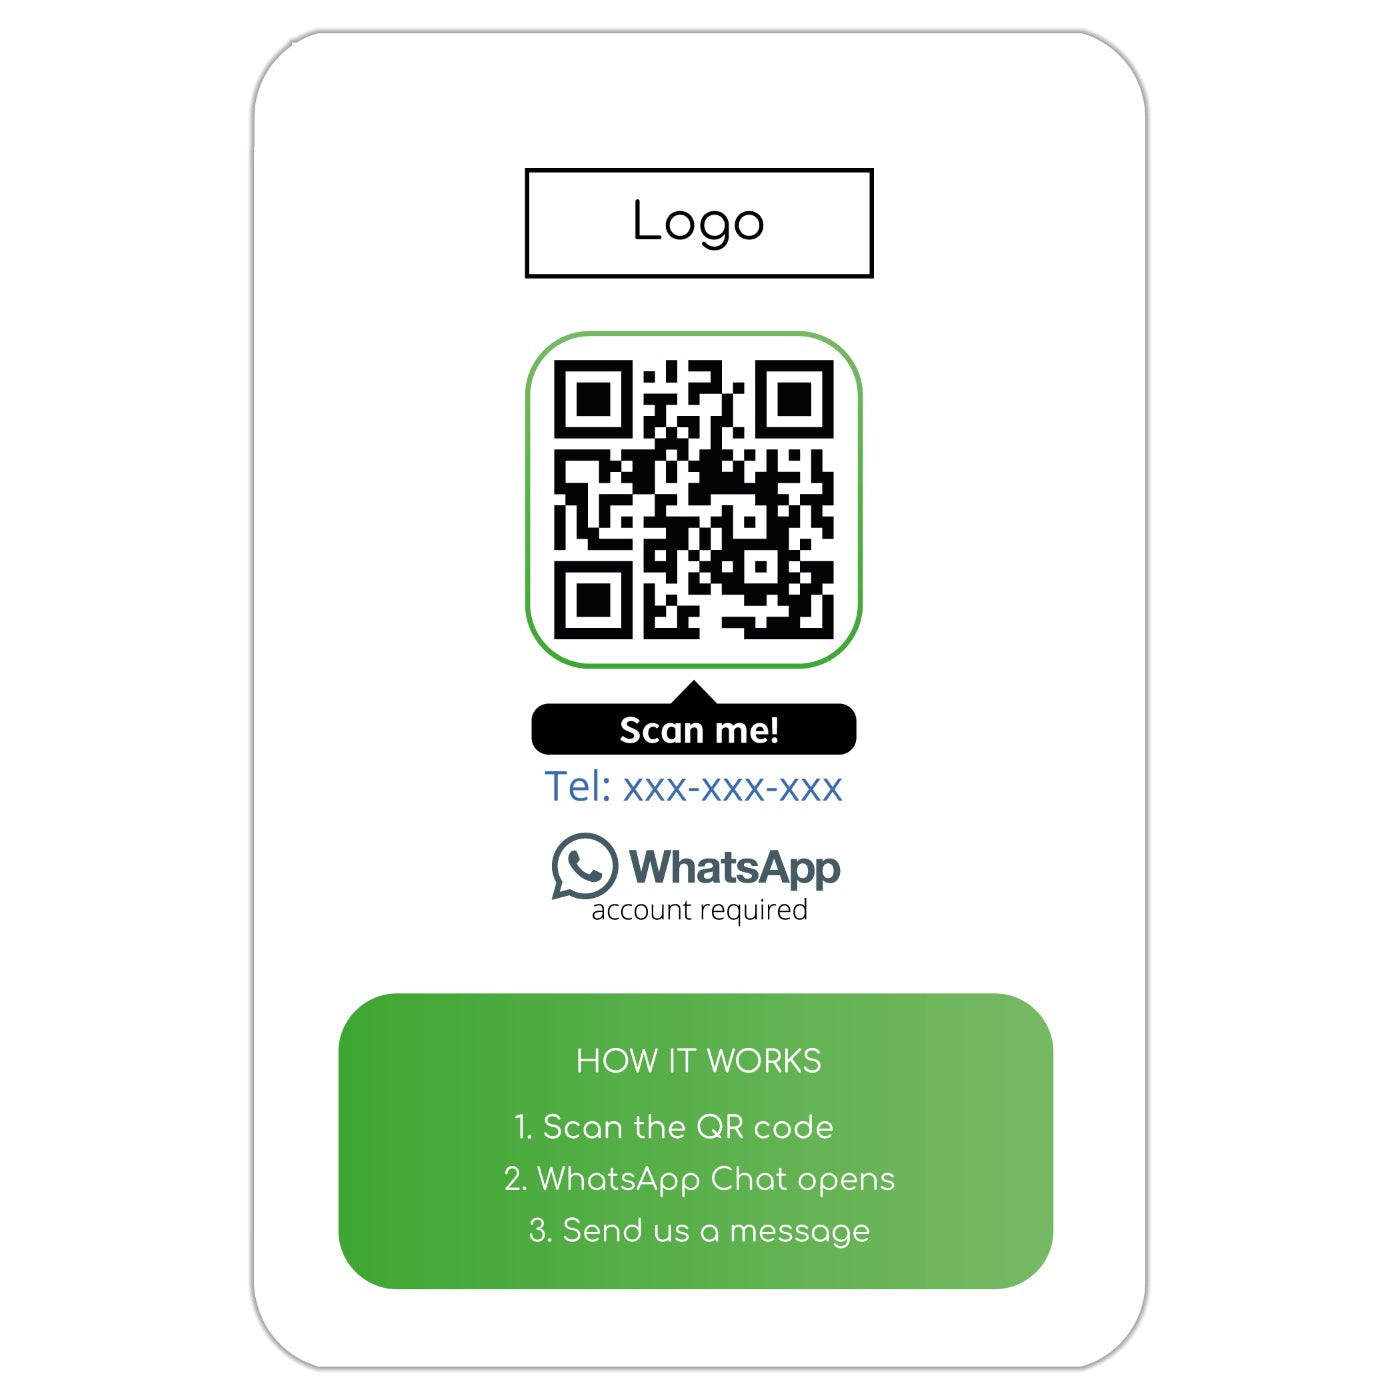 WhatsApp QR business card